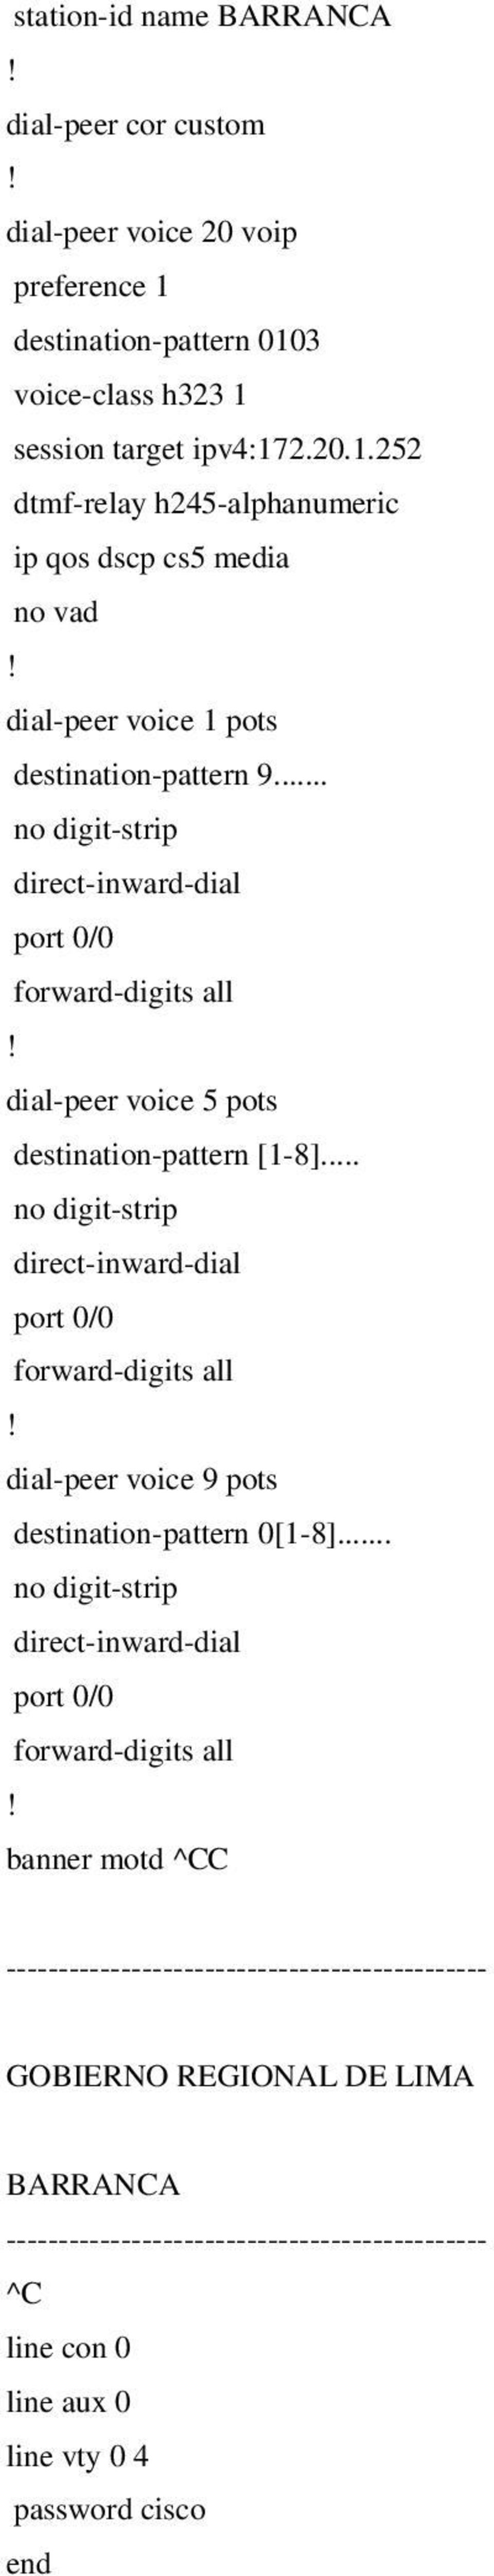 .. dial-peer voice 5 pots destination-pattern [1-8]... dial-peer voice 9 pots destination-pattern 0[1-8].